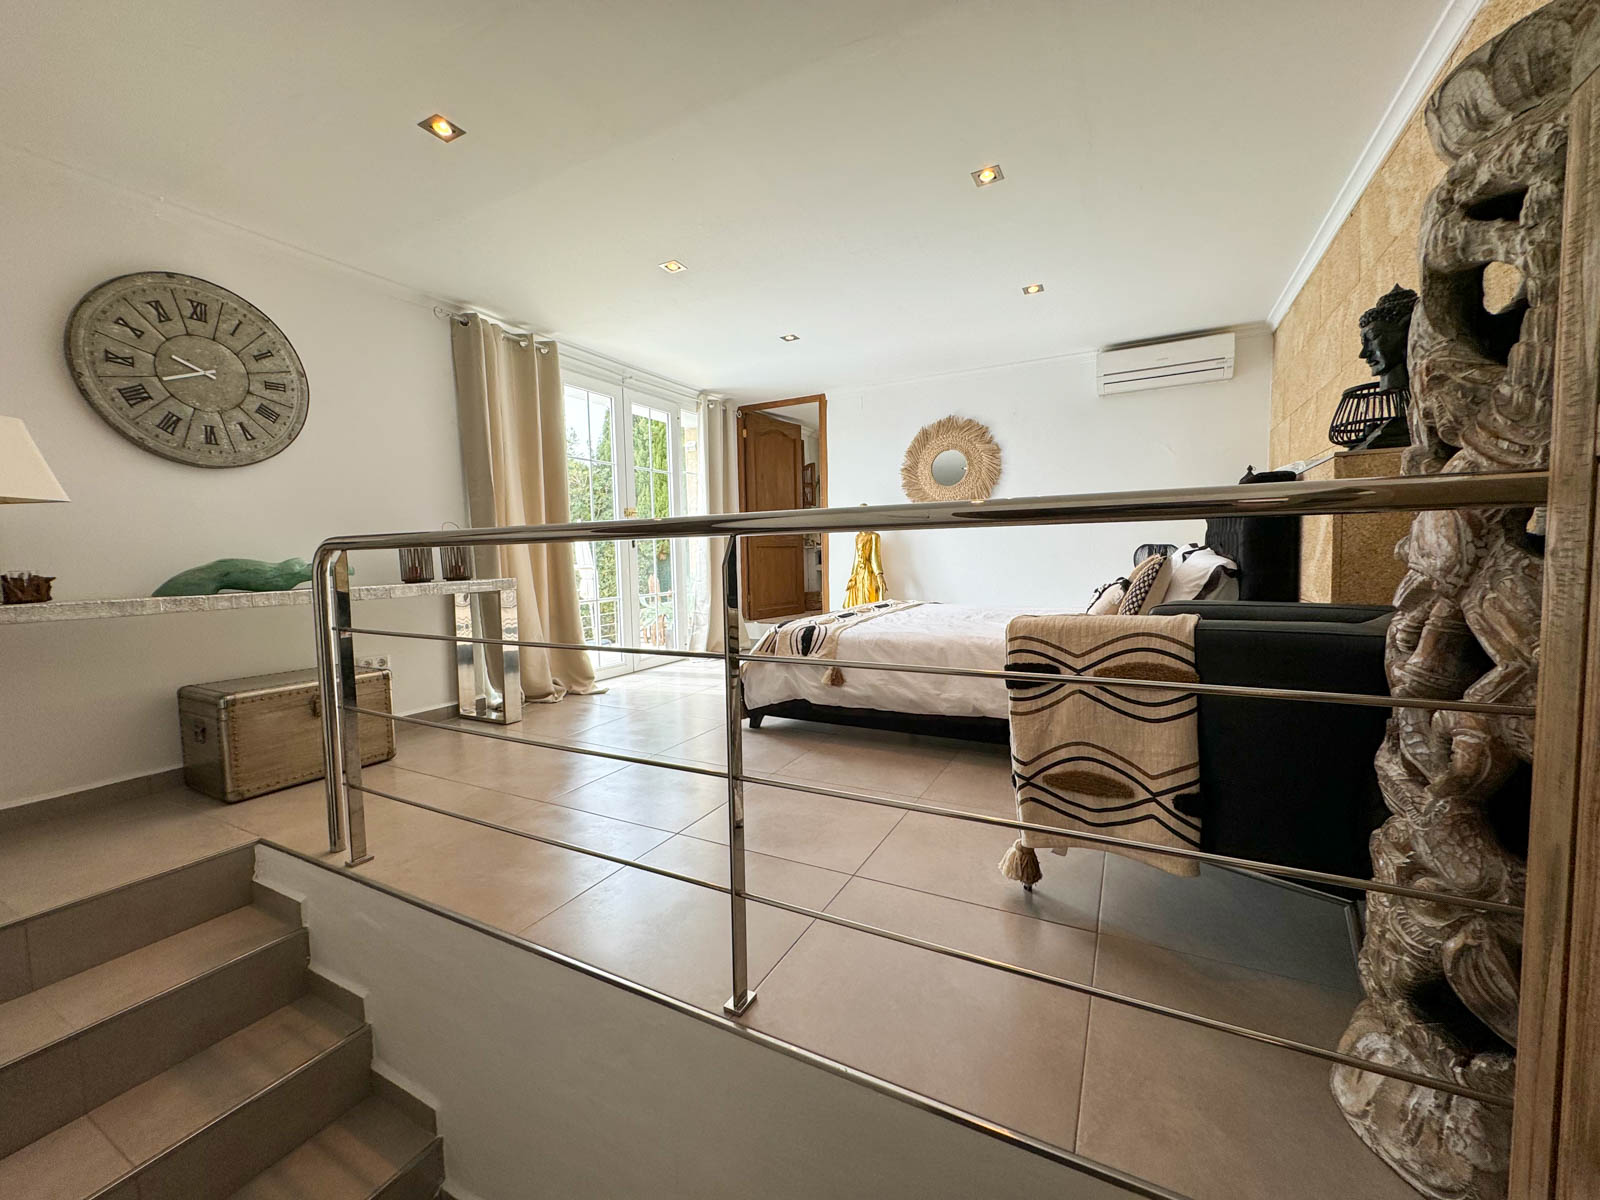 Stunning 5 bedroom family villa